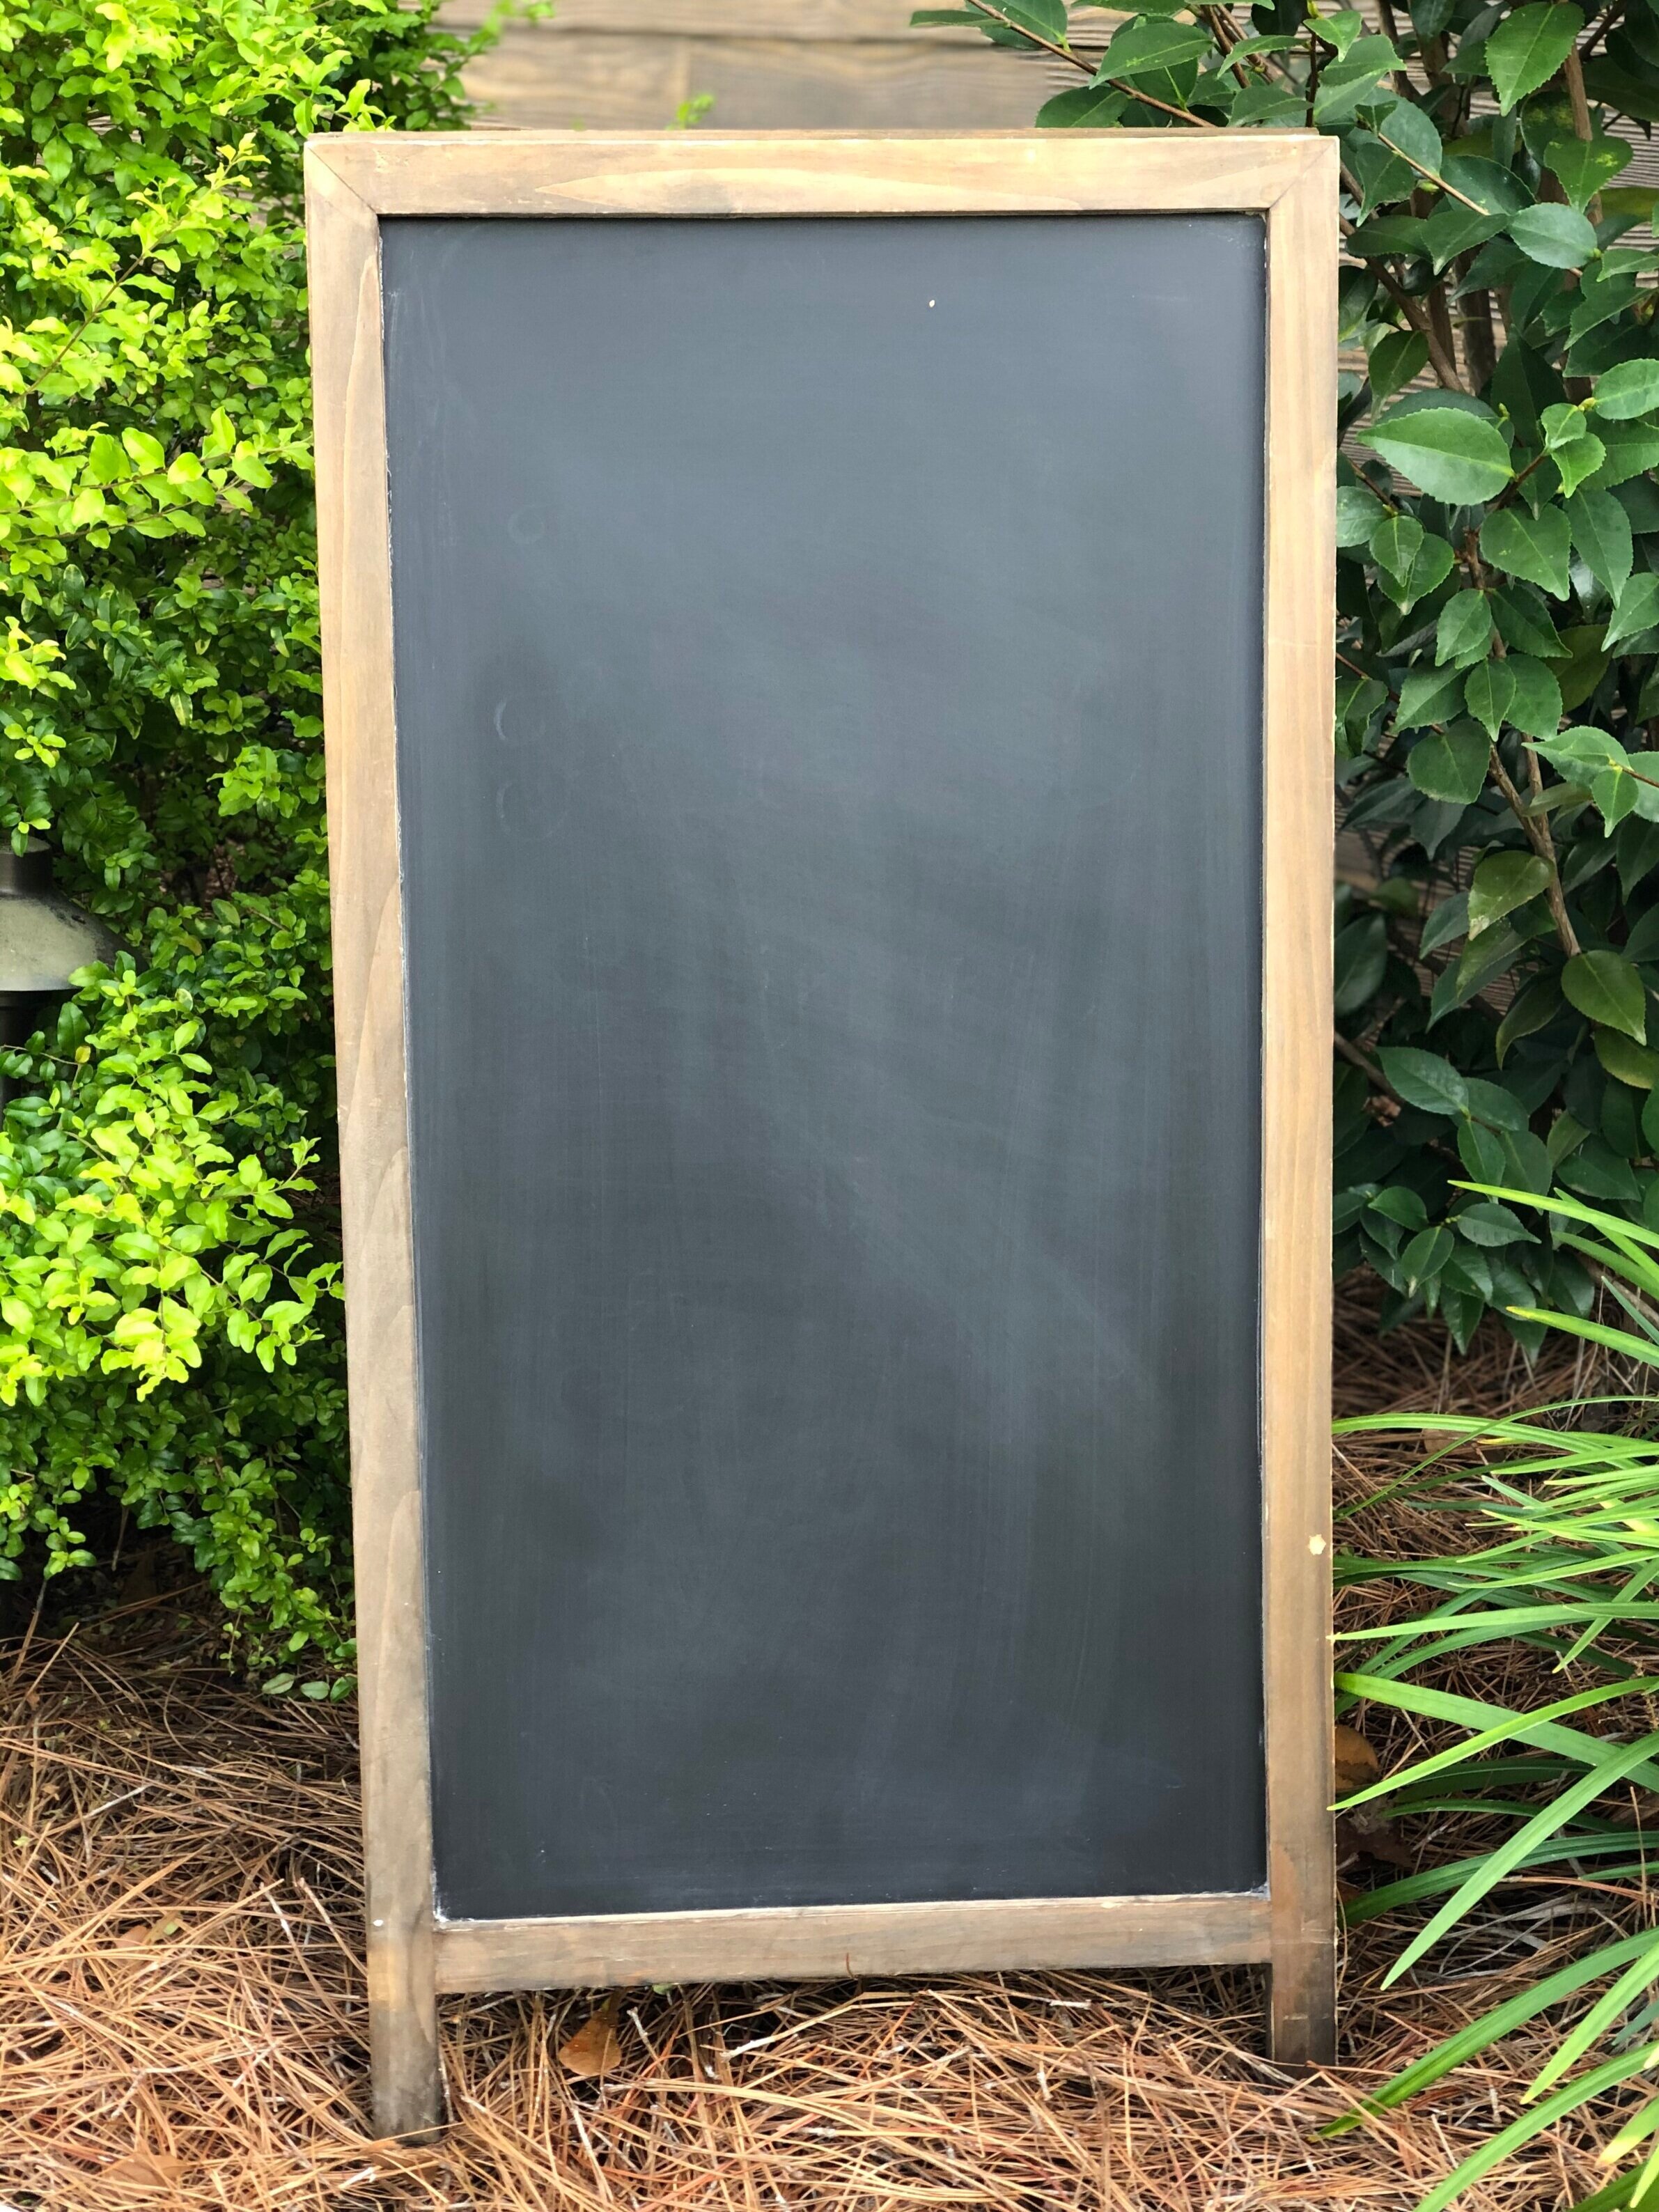 Chalkboard Signs — Hummingbird Hill Farms